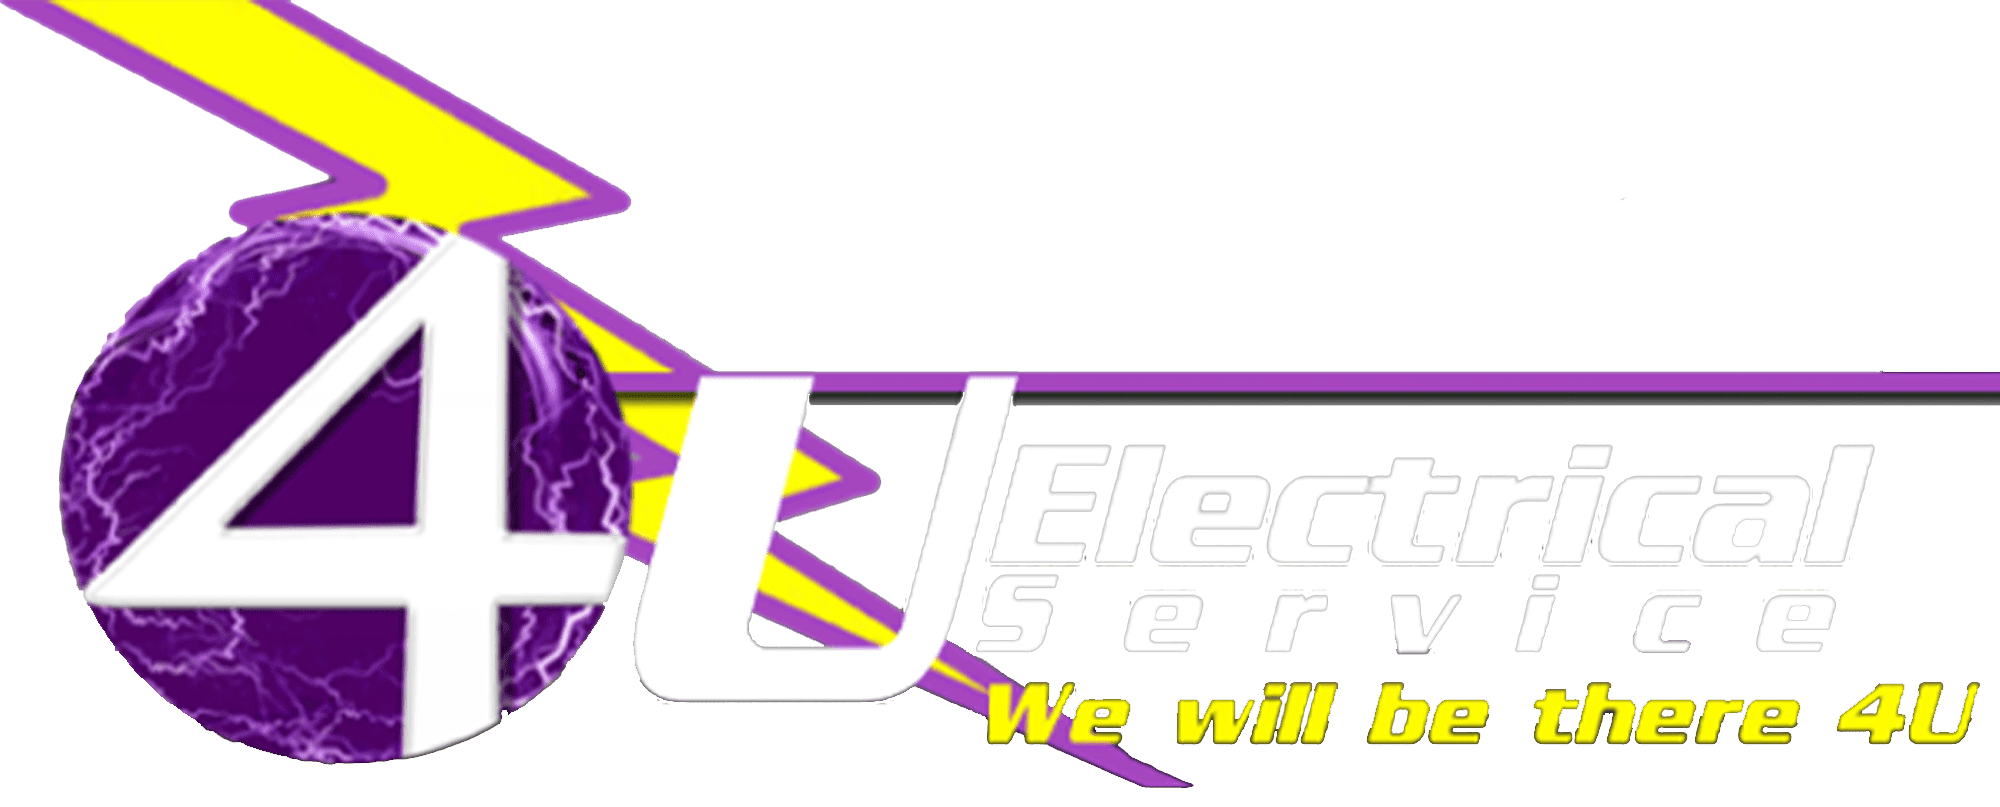 4U Electrical Service